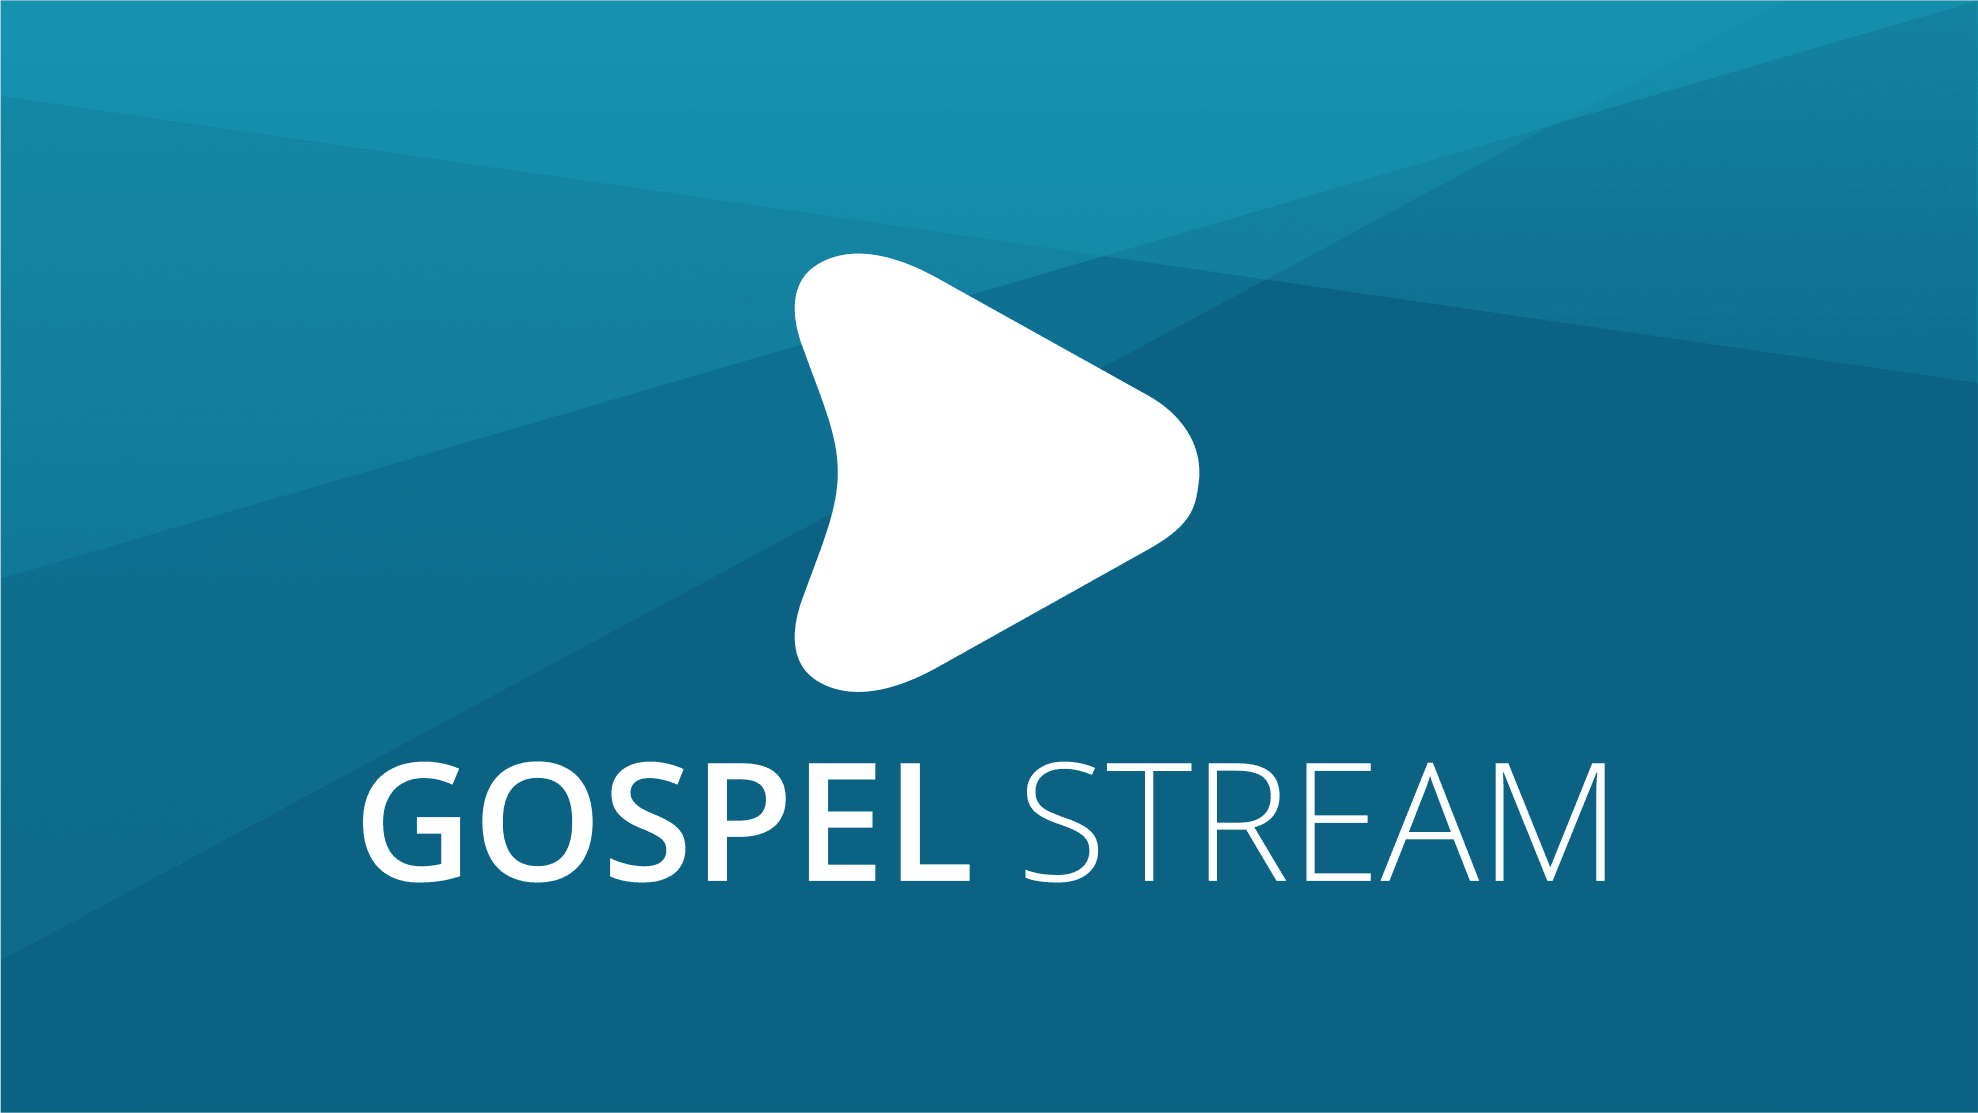 Gospel Stream Logos